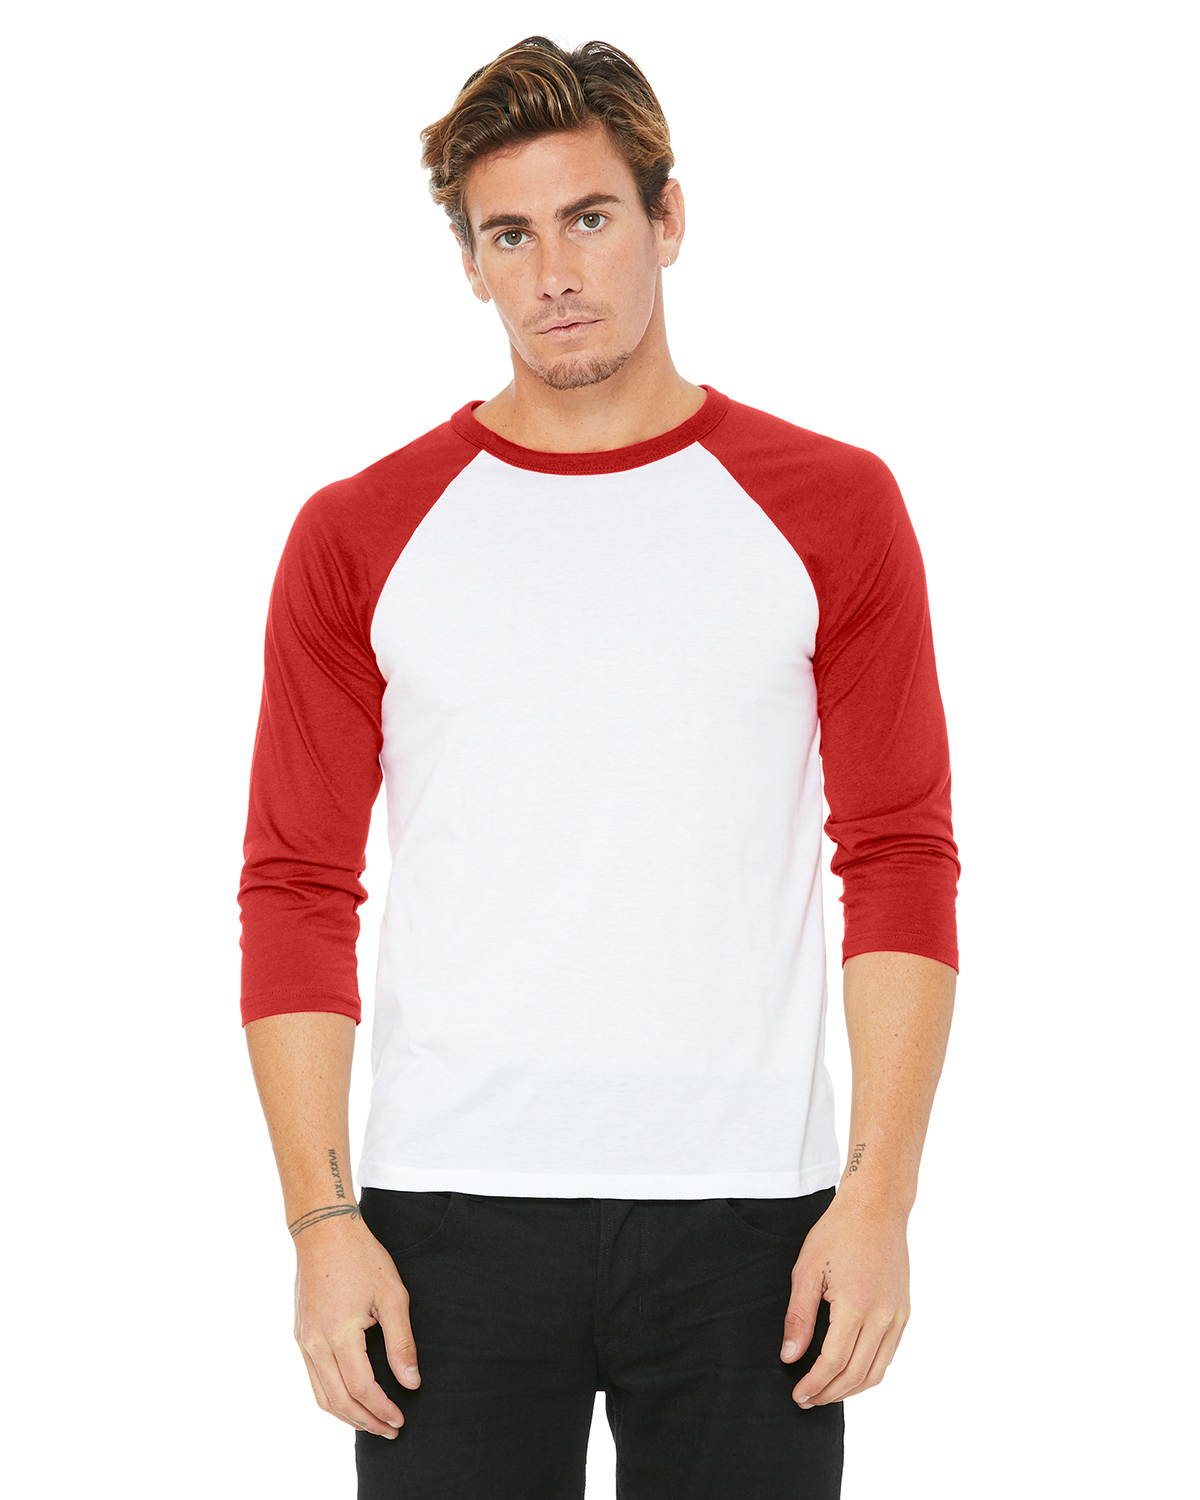 white shirt red